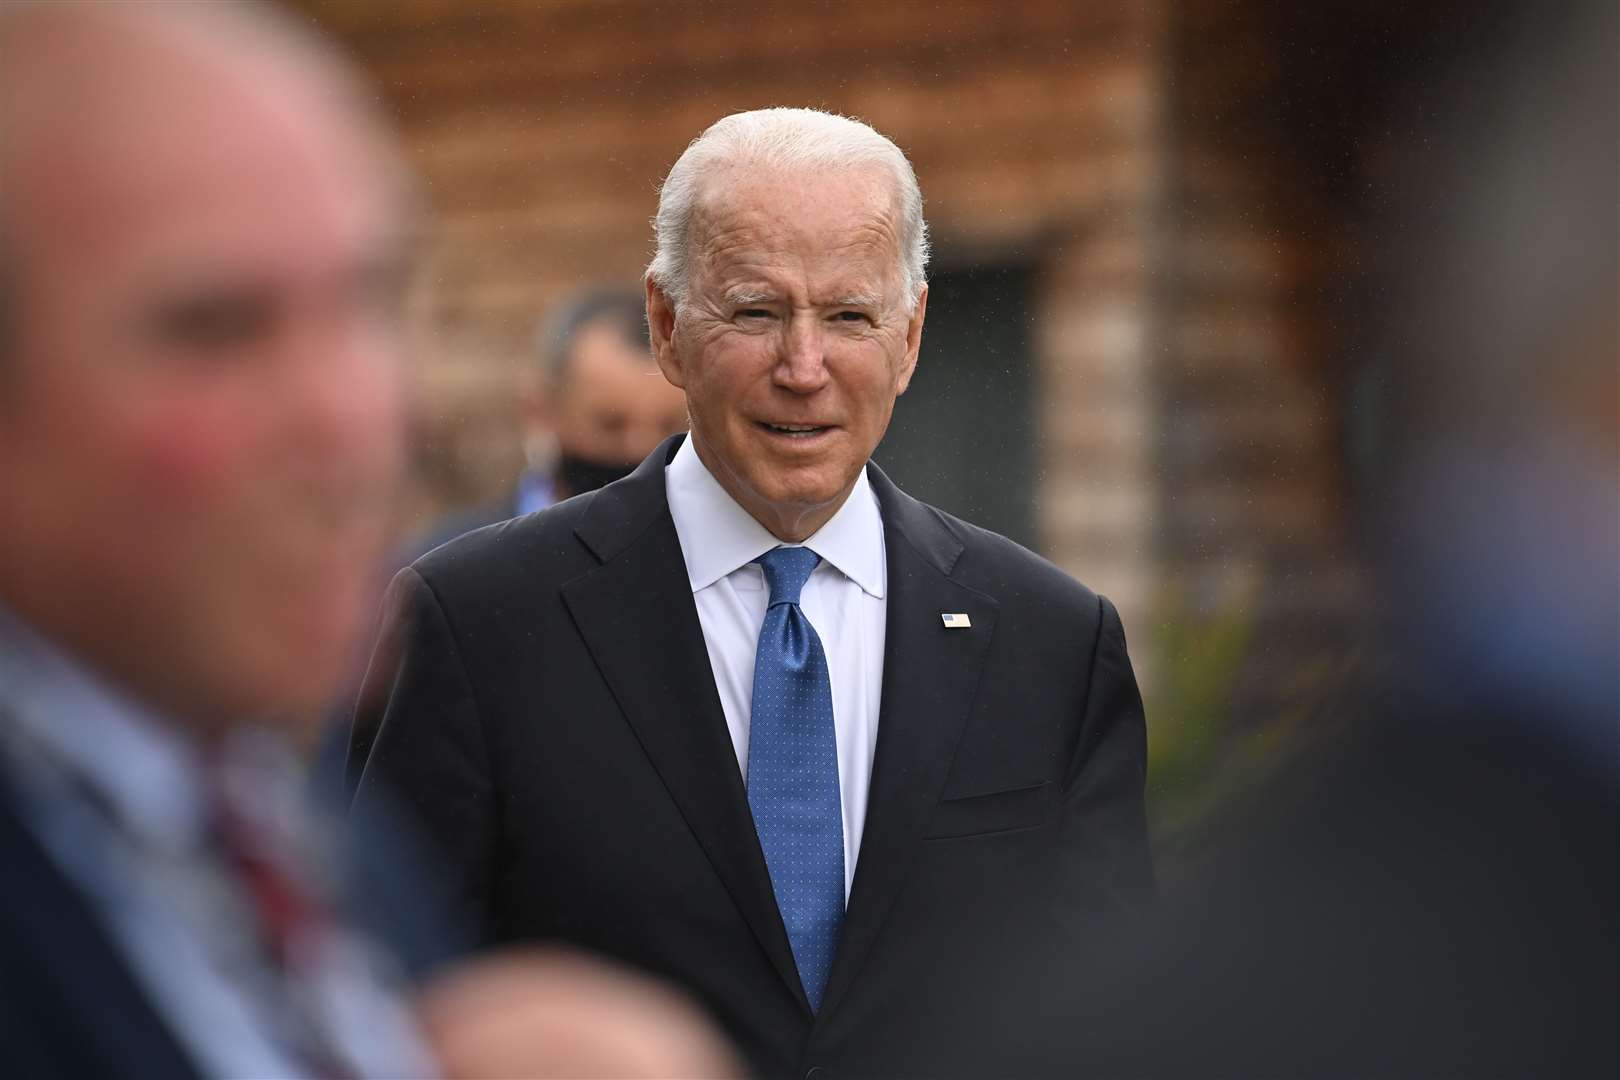 Joe Biden at the G7 summit (Leon Neal/PA)